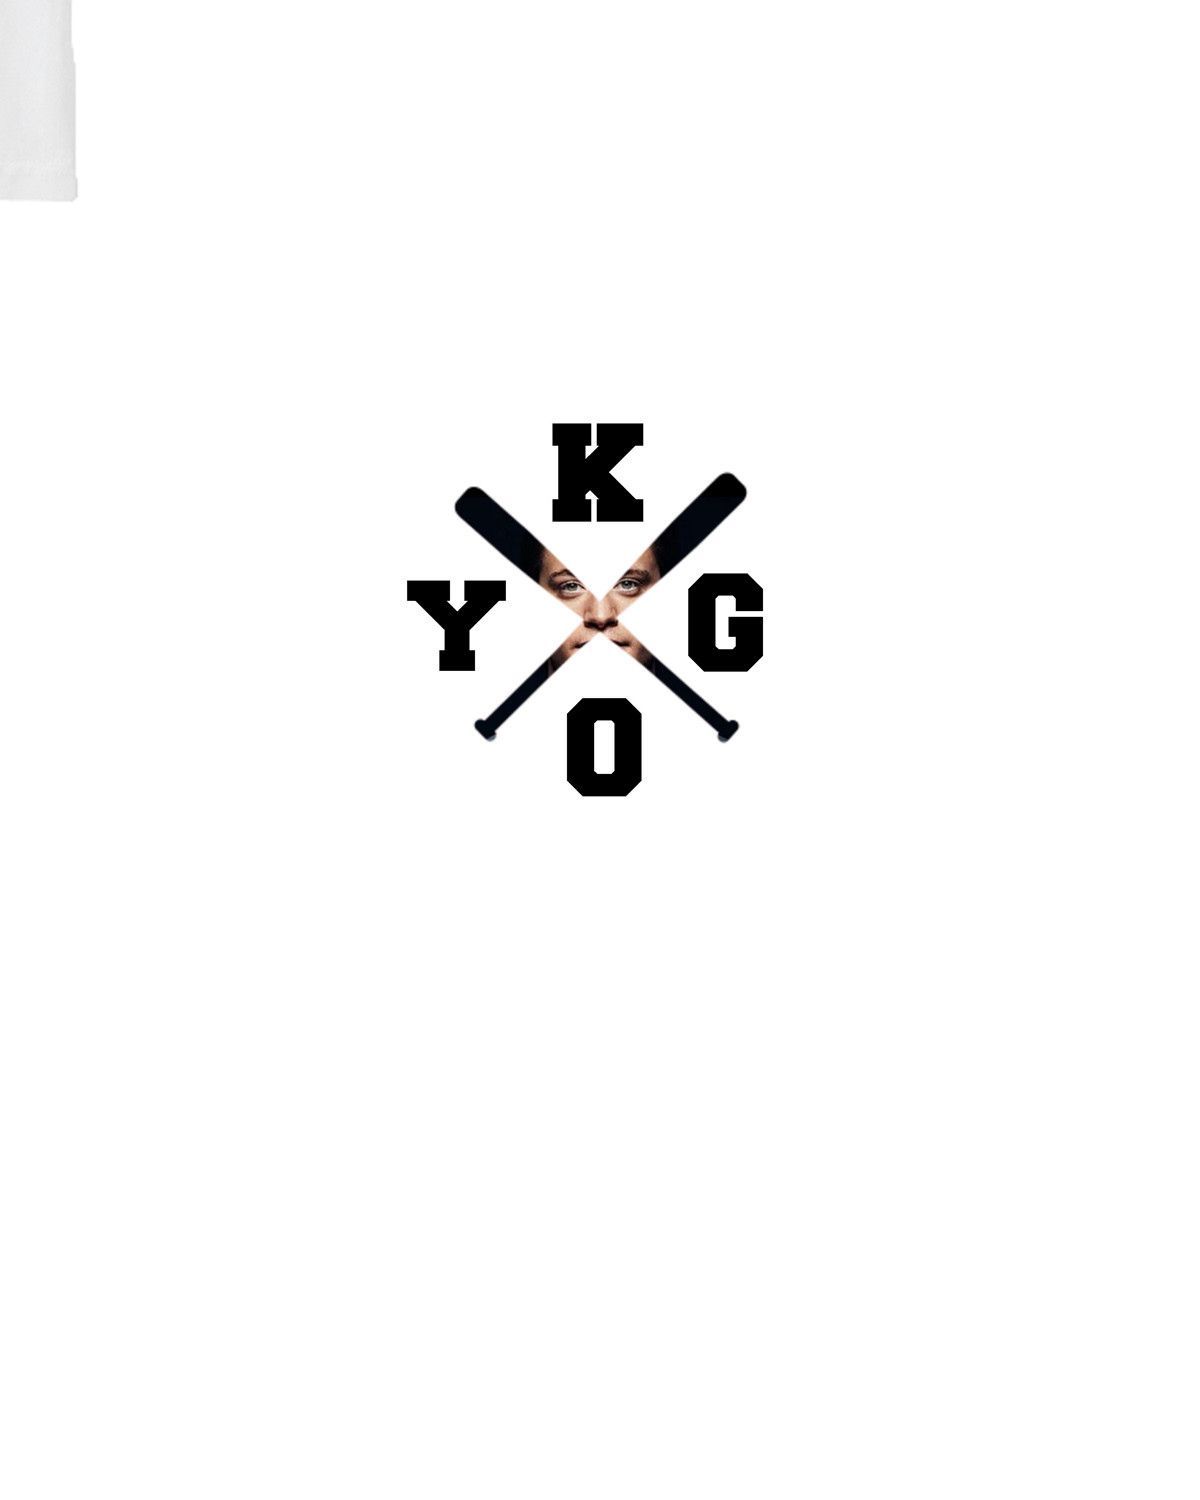 Resultado de imagen para kygo logo